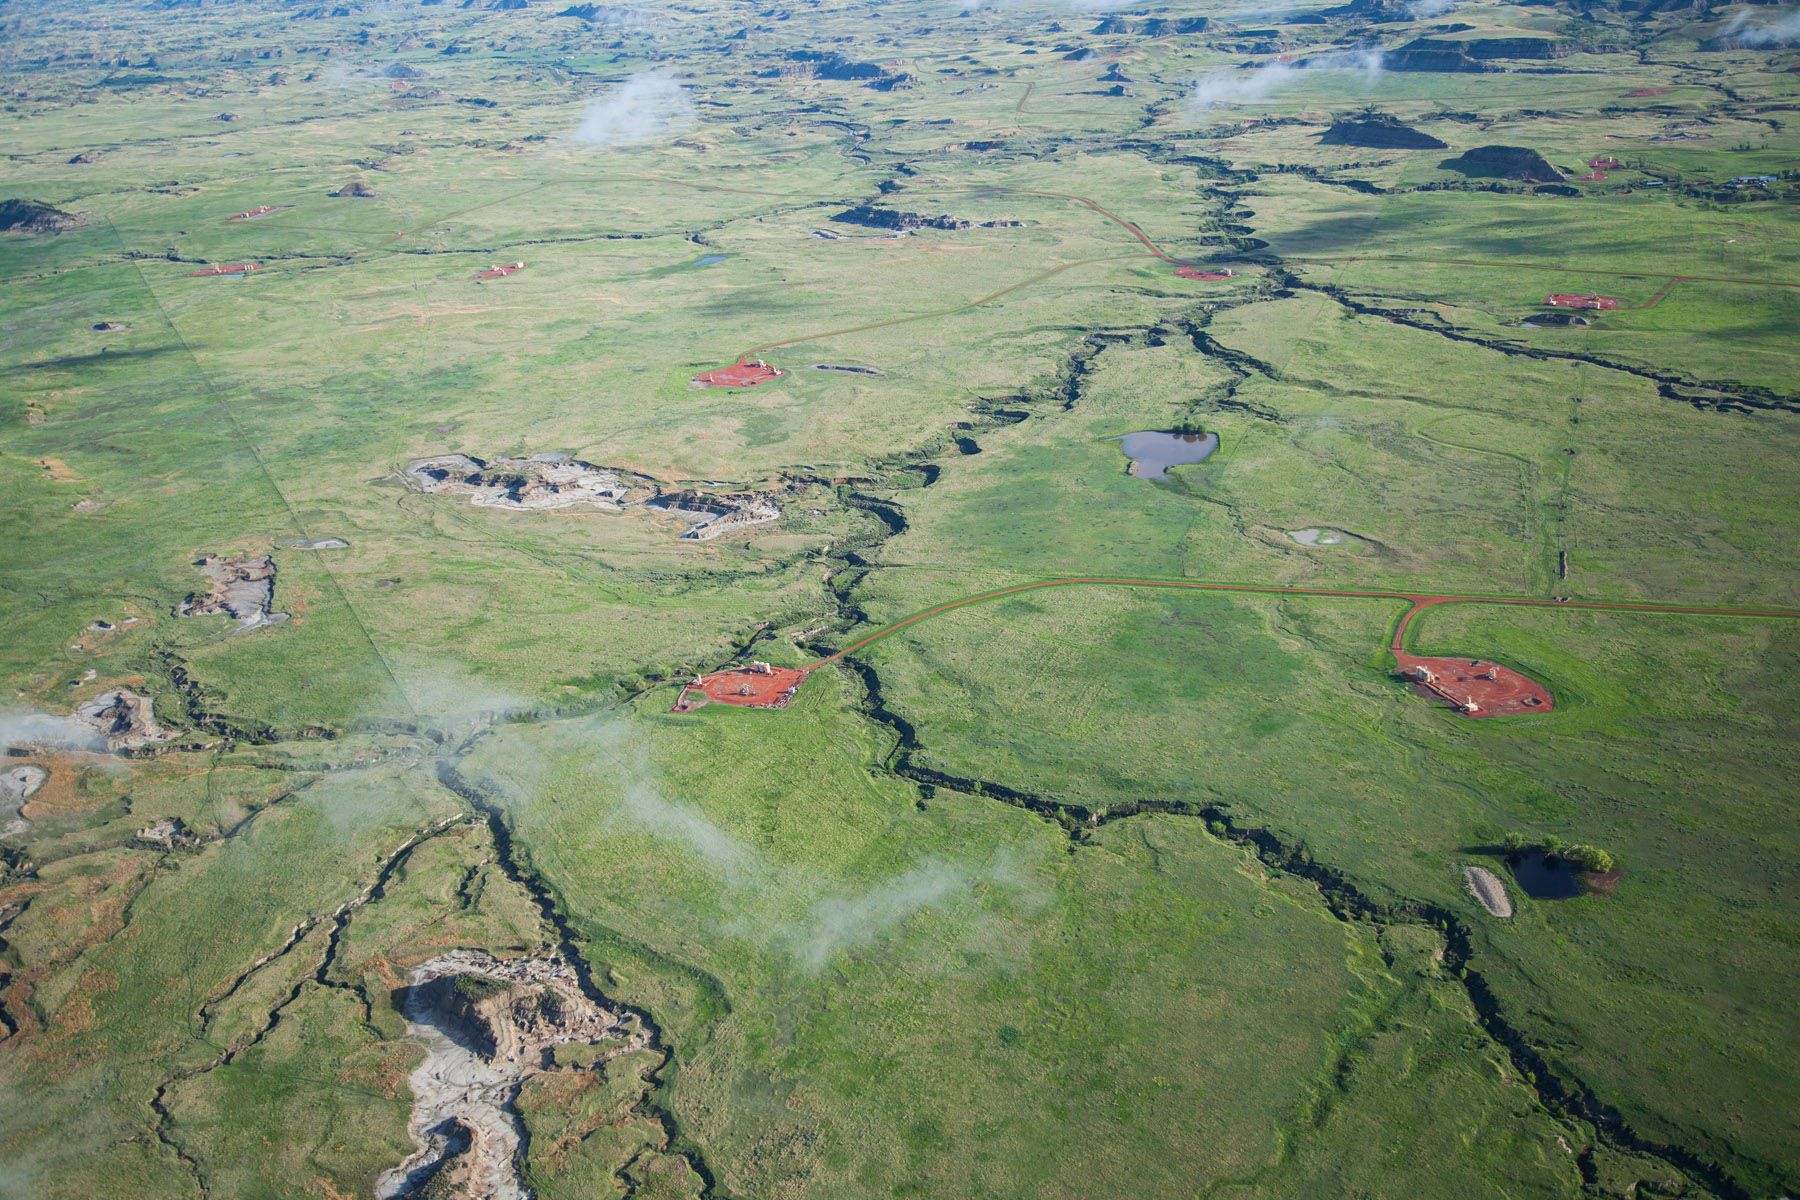 Fracking in the Bakken region encroach on Theodore Roosevelt National Park